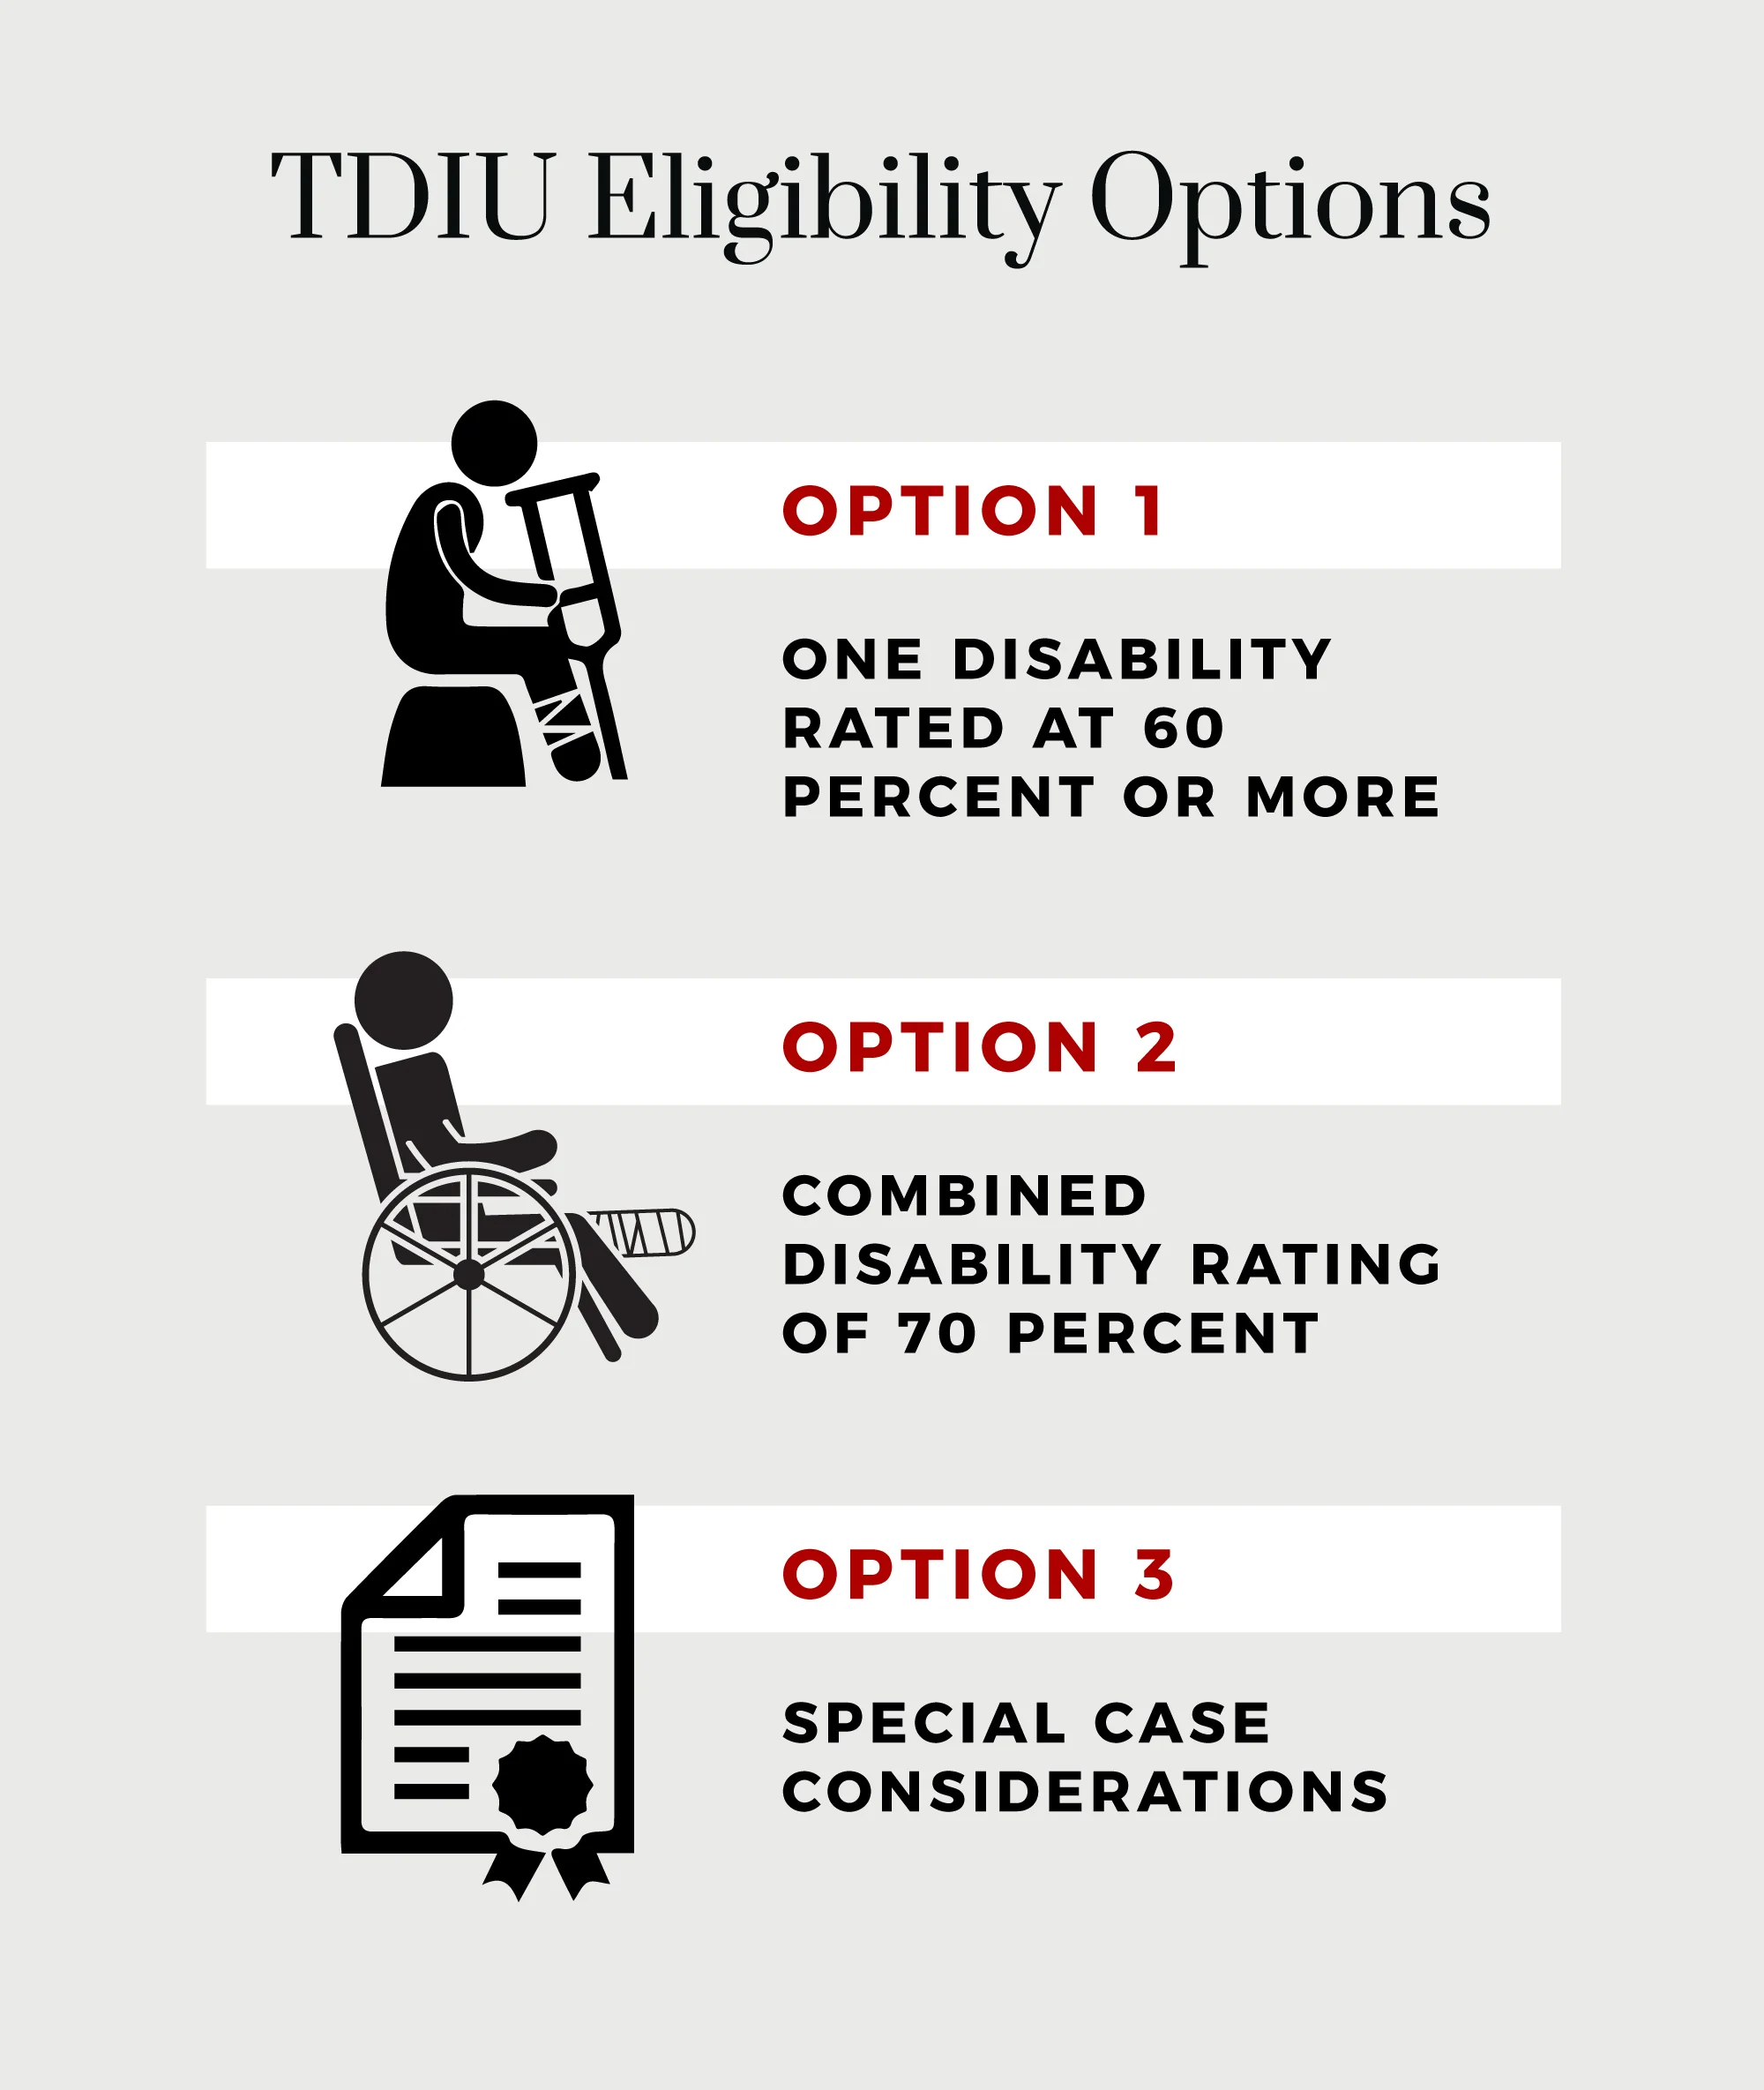 TDIU eligibility options